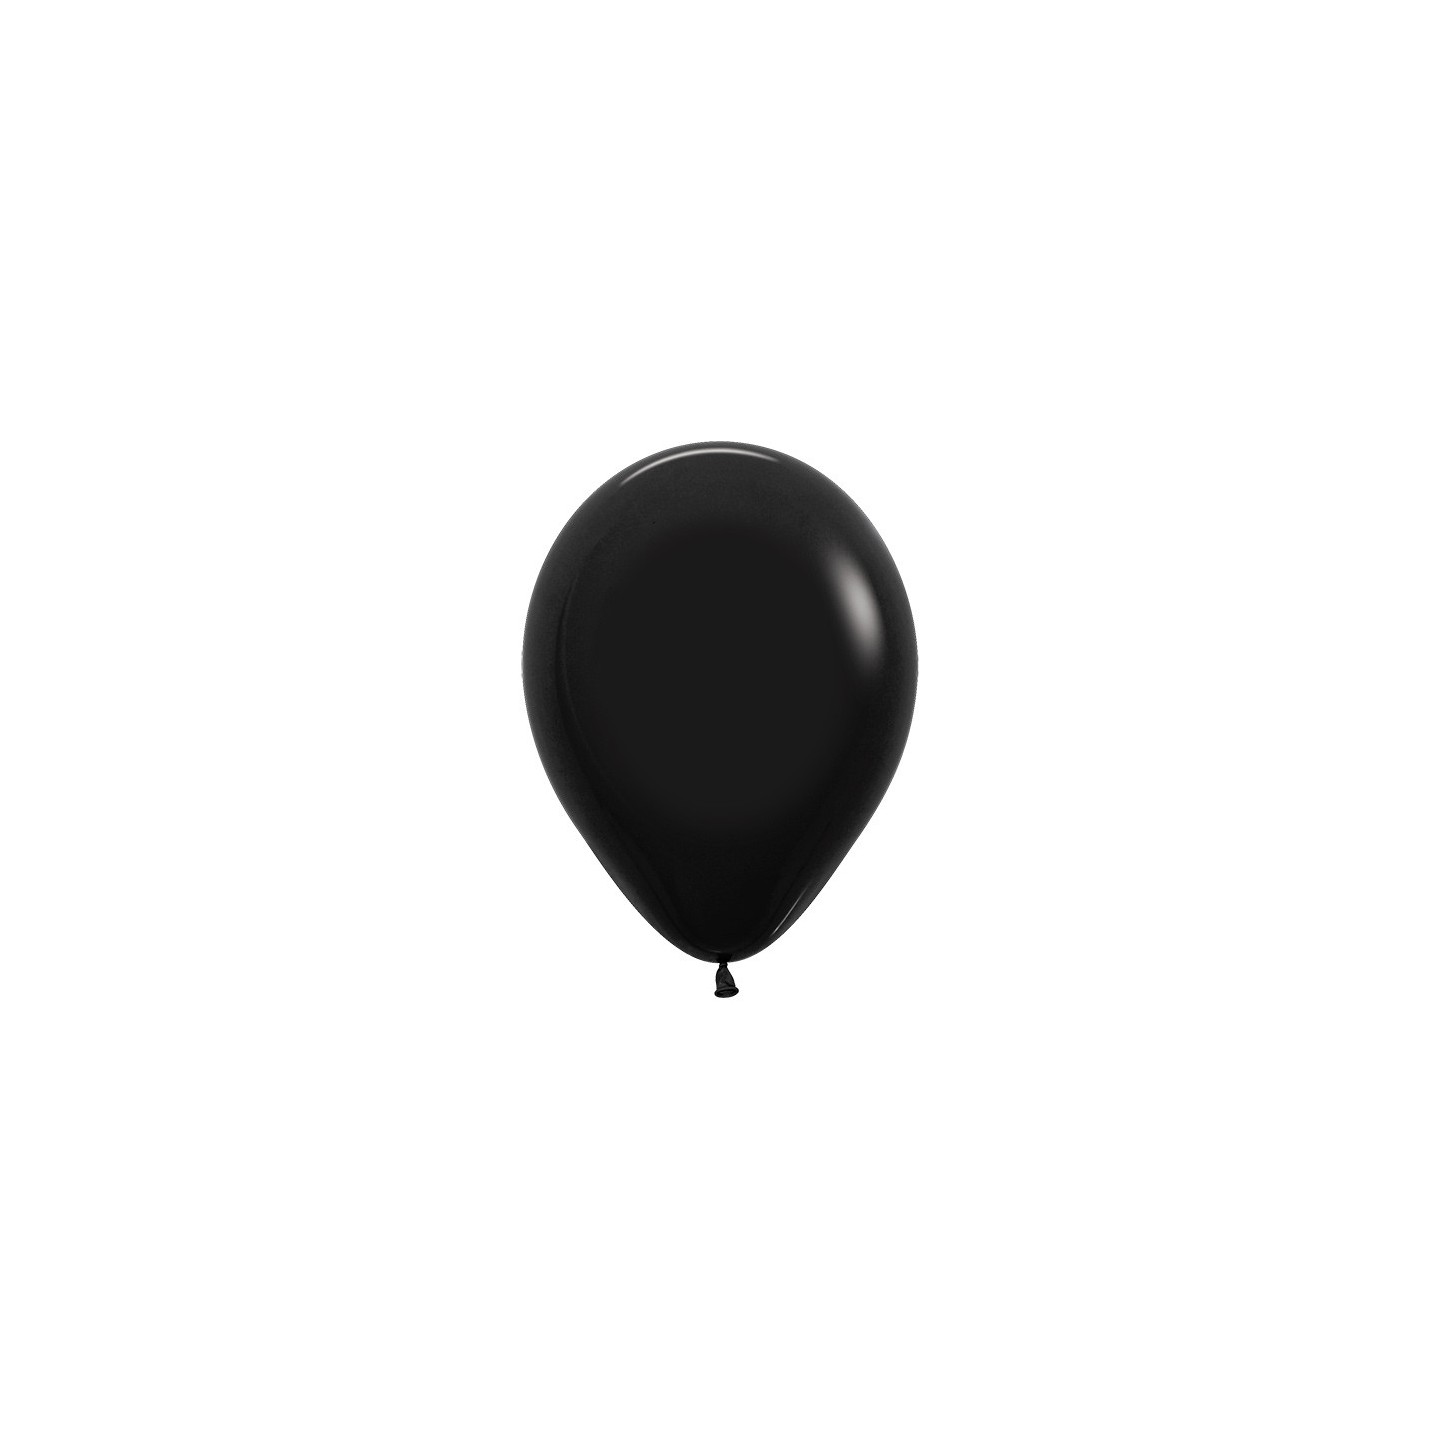 sempertex ballonnen zwart fashion solid